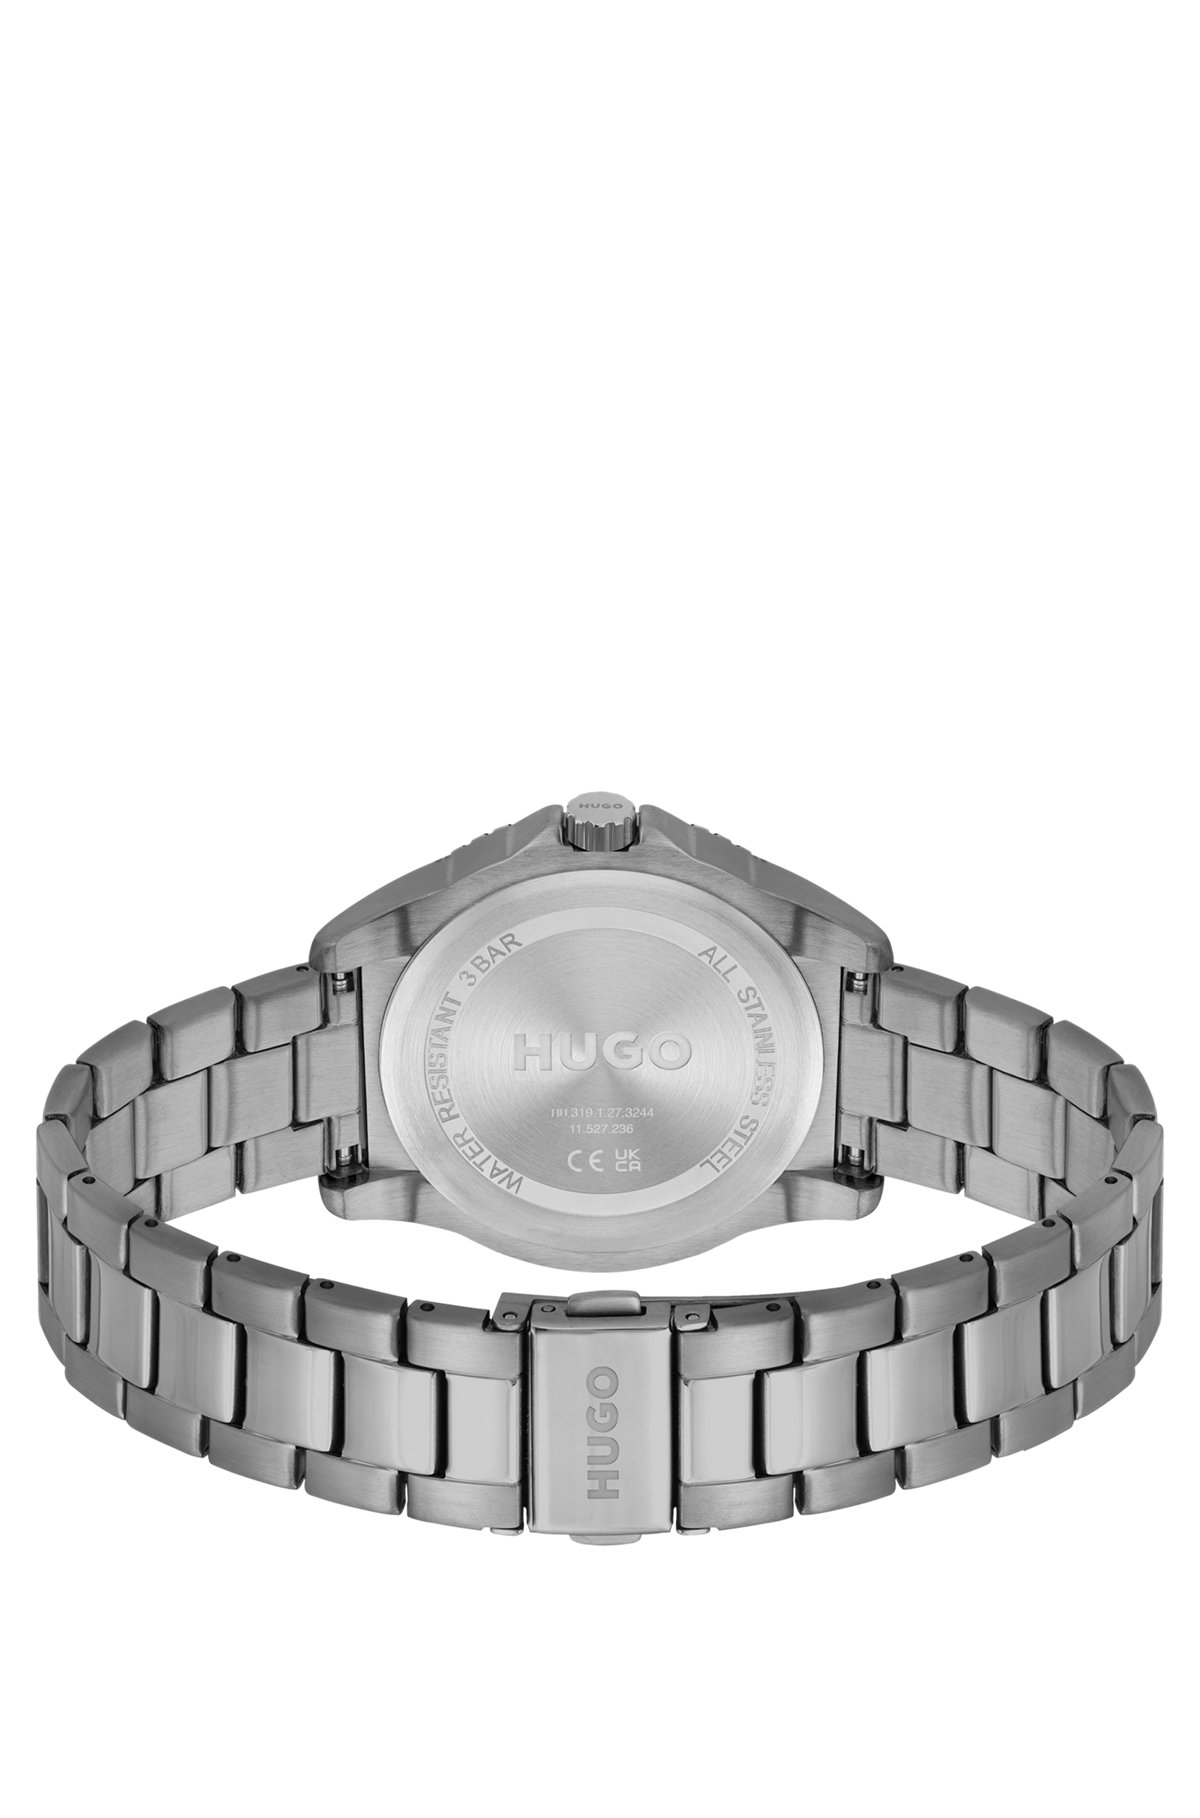 Grau beschichtete Uhr mit Gliederarmband, Silber